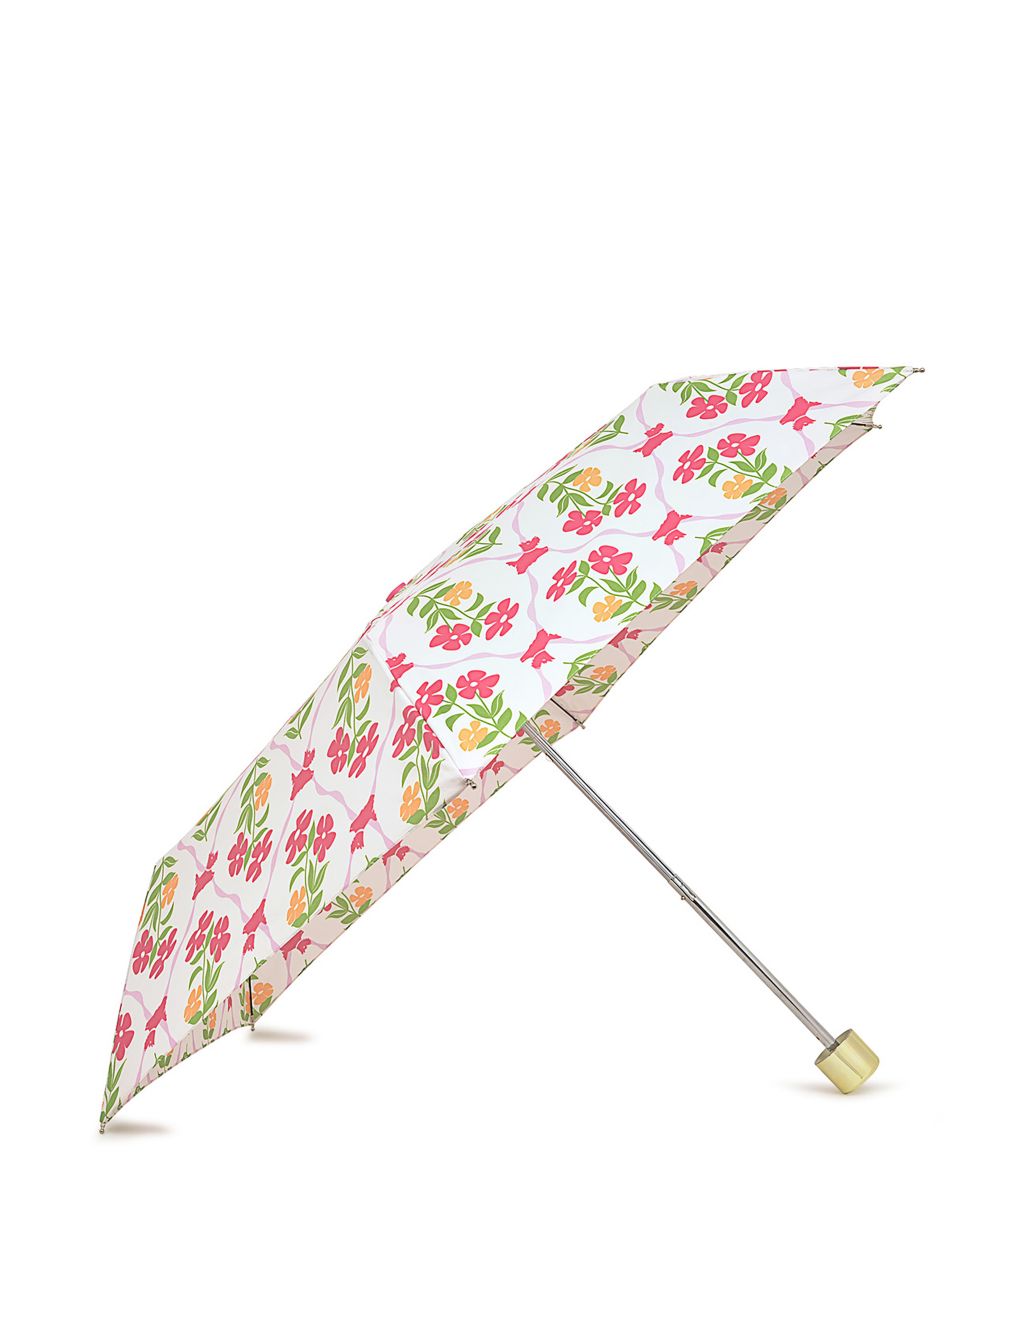 Floral Umbrella 3 of 3